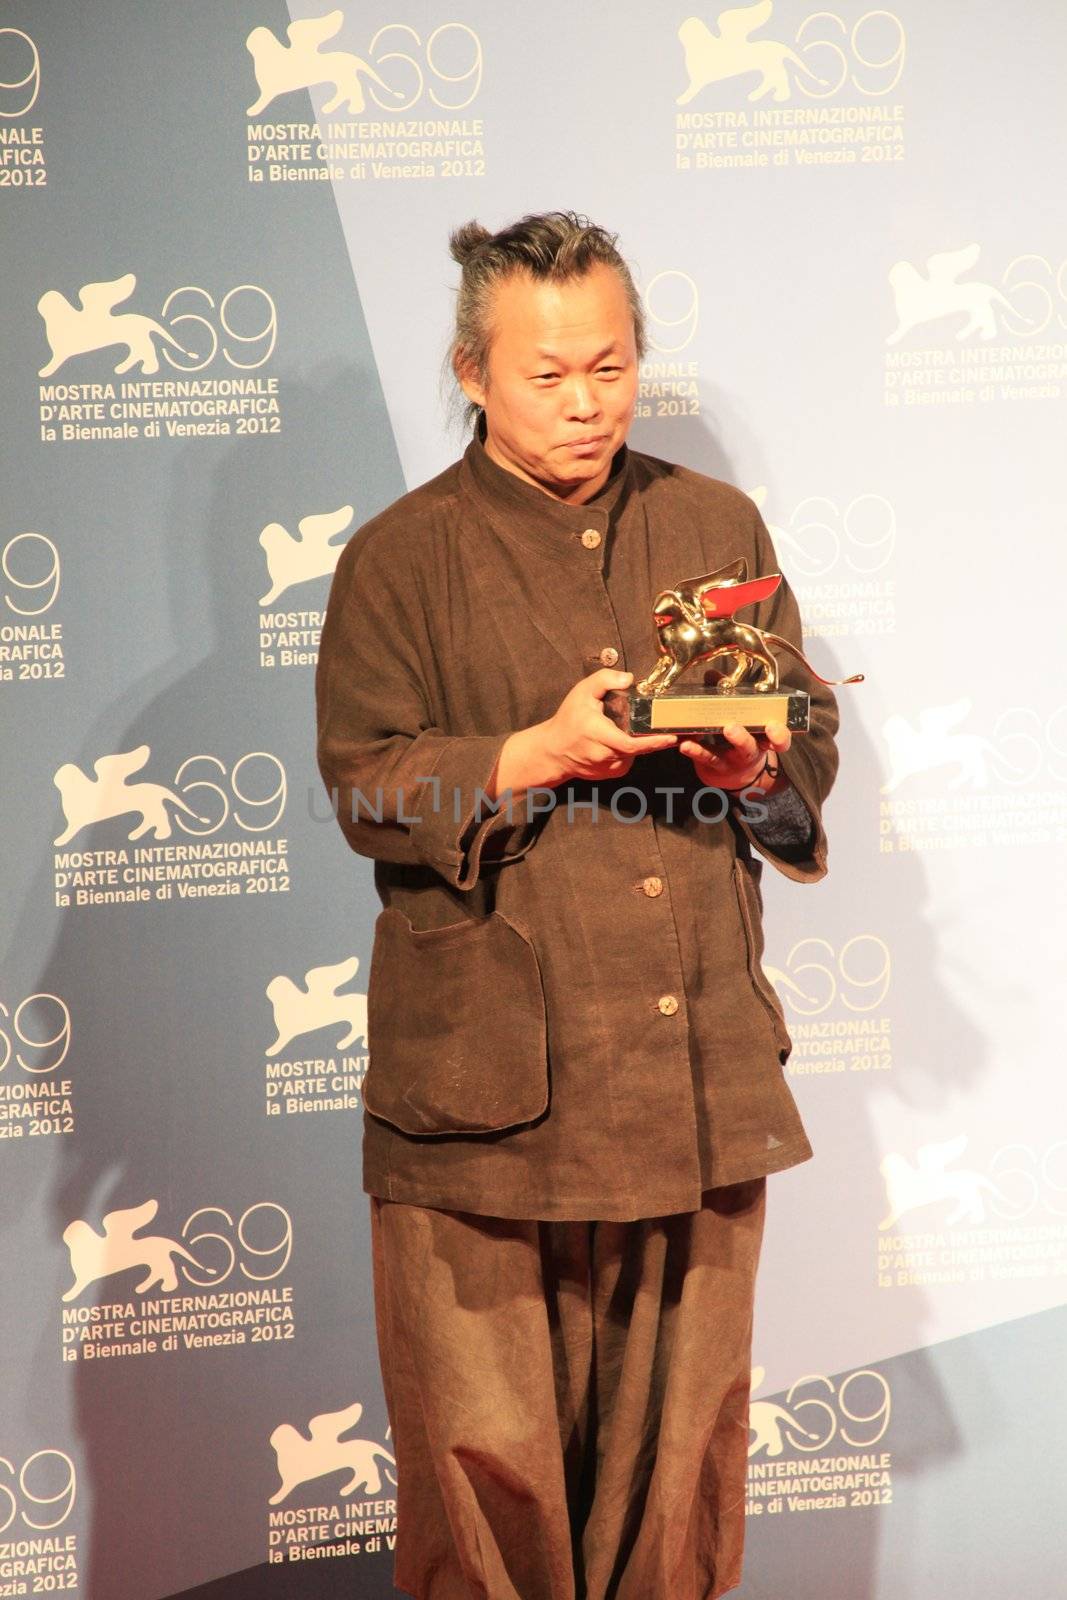 Kim Ki-duk poses for photographers at 69th Venice Film Festival